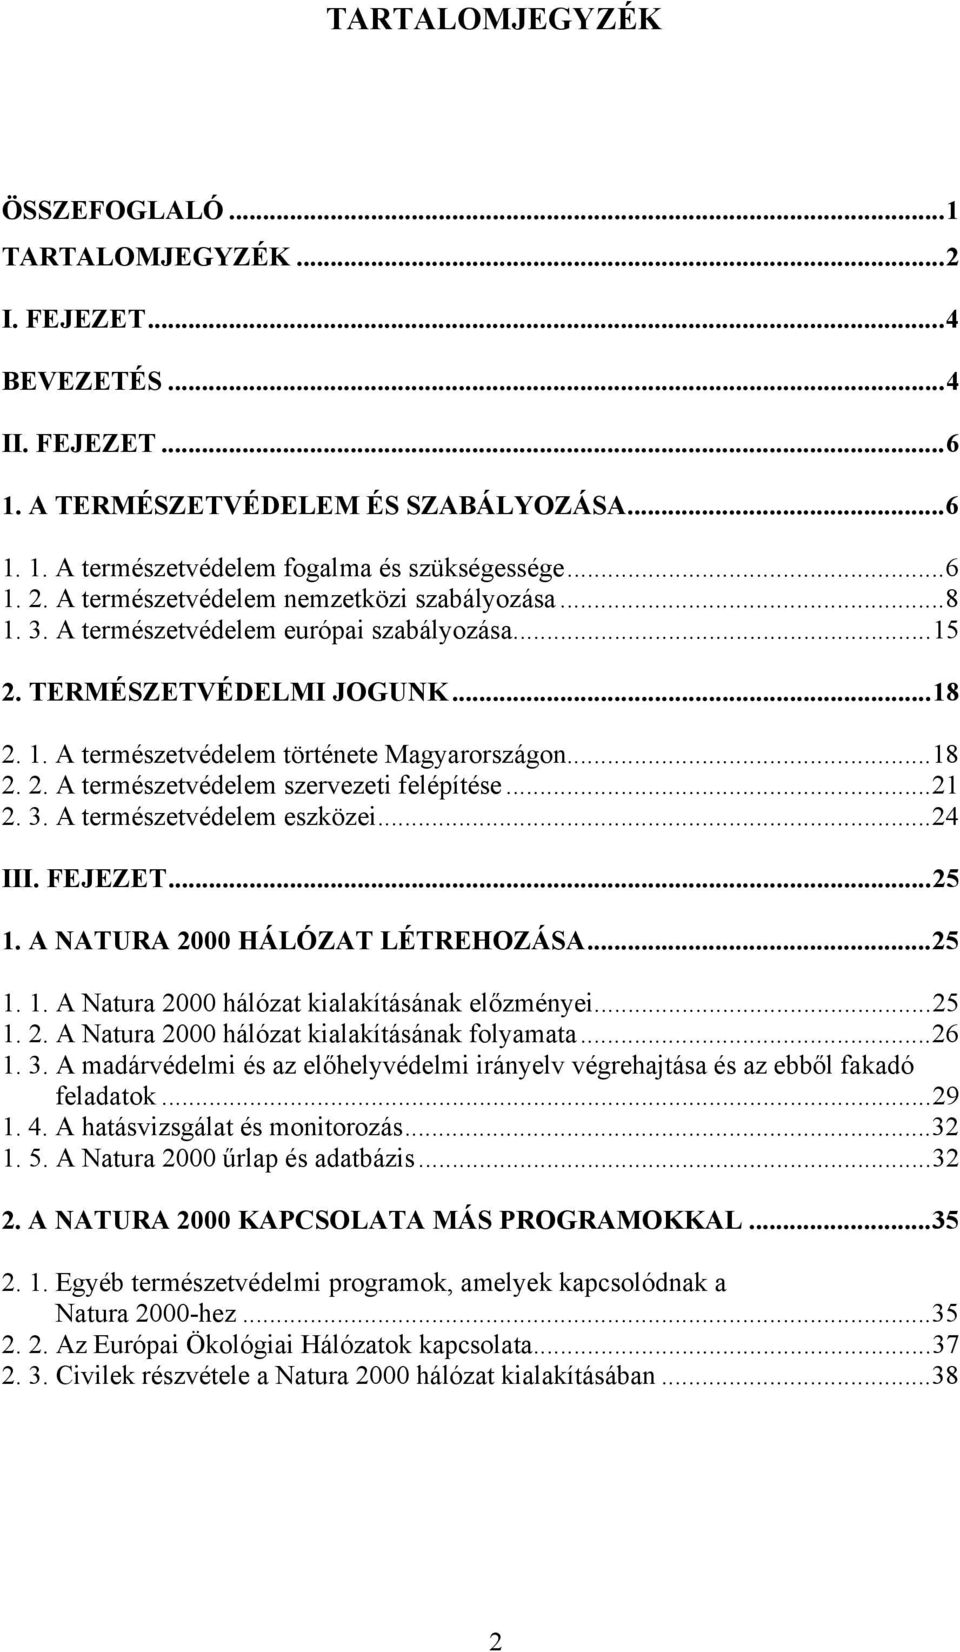 ..21 2. 3. A természetvédelem eszközei...24 III. FEJEZET...25 1. A NATURA 2000 HÁLÓZAT LÉTREHOZÁSA...25 1. 1. A Natura 2000 hálózat kialakításának előzményei...25 1. 2. A Natura 2000 hálózat kialakításának folyamata.